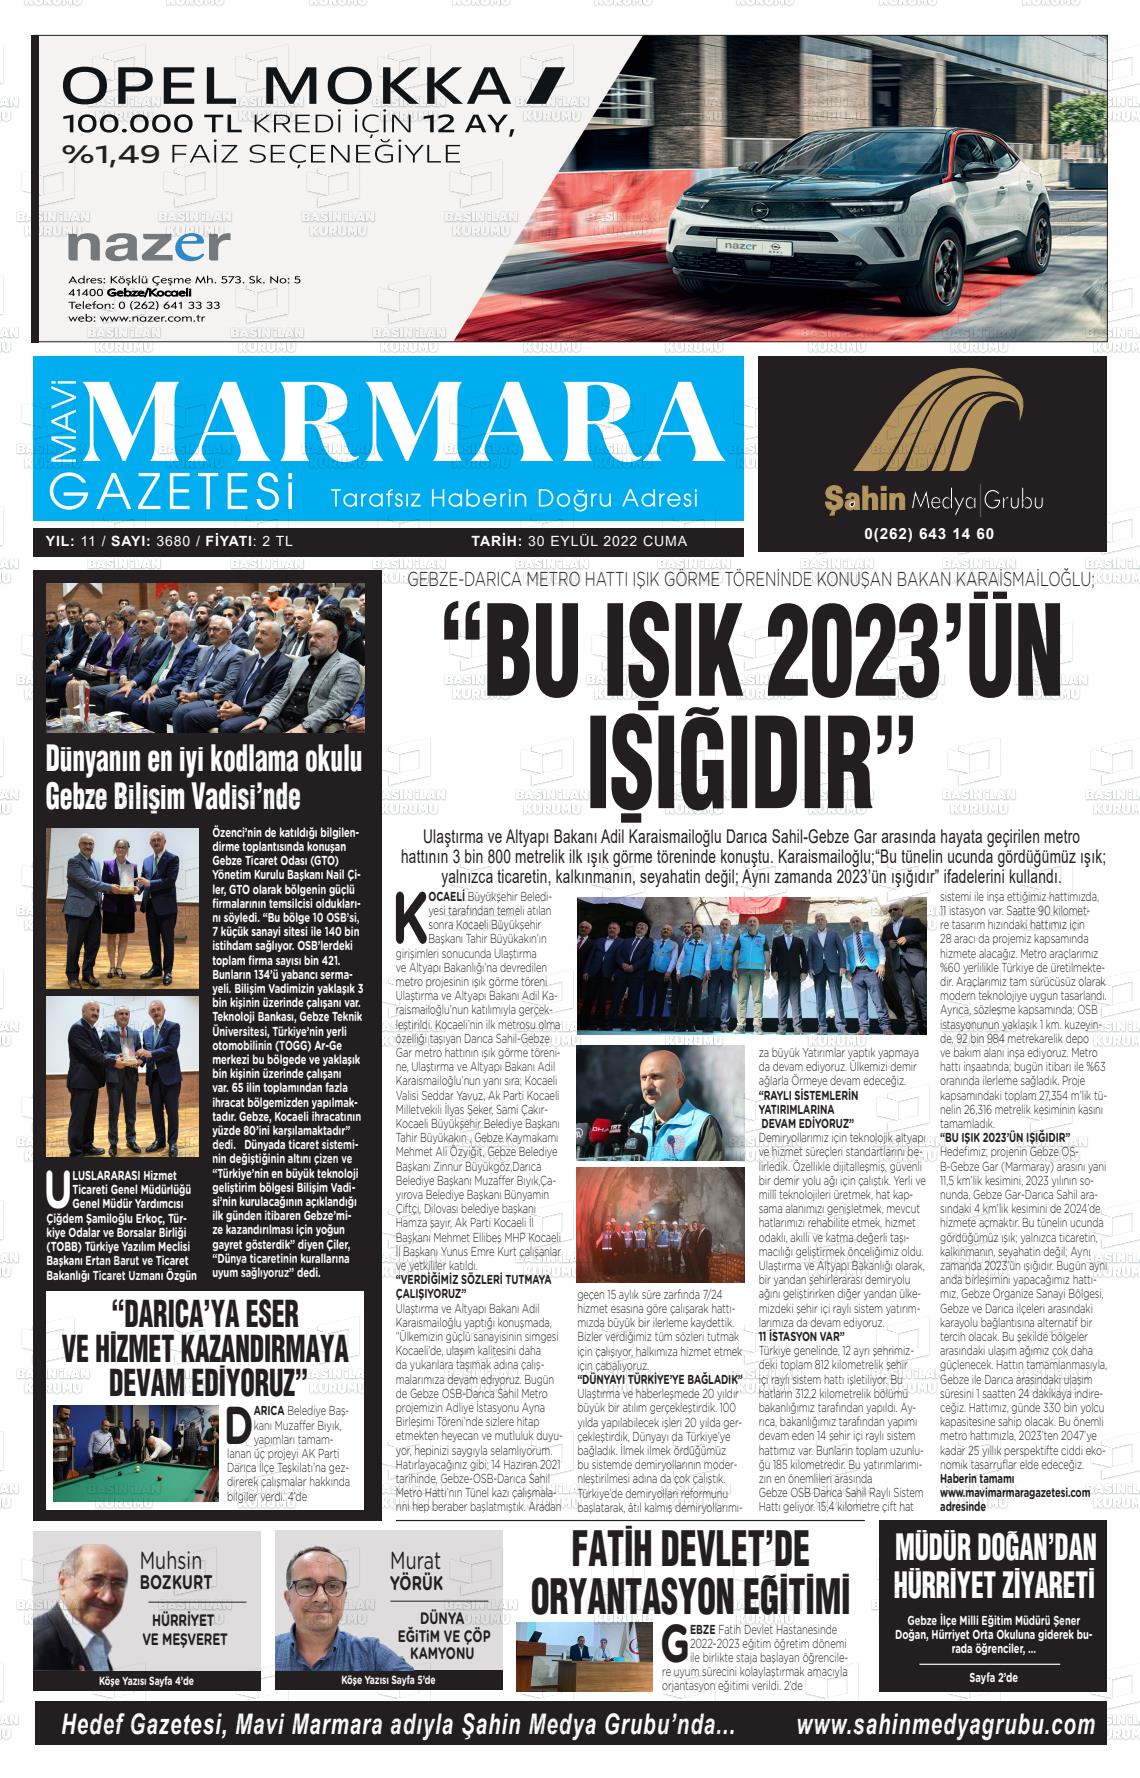 30 Eylül 2022 Hedef Gazete Manşeti